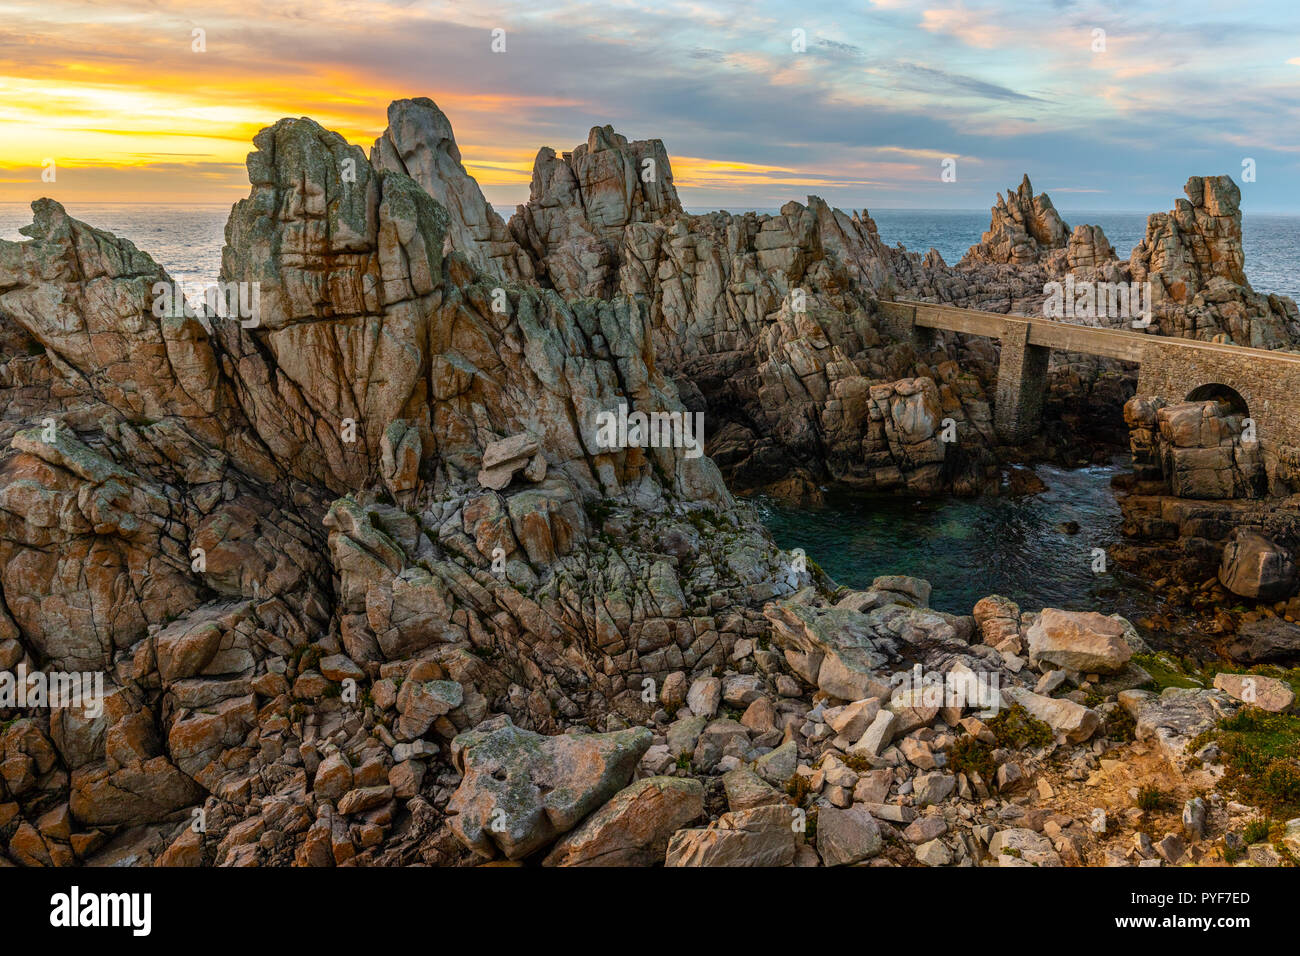 The sharp rocky coastline of Ushant island at sunset, Brittany, France Stock Photo